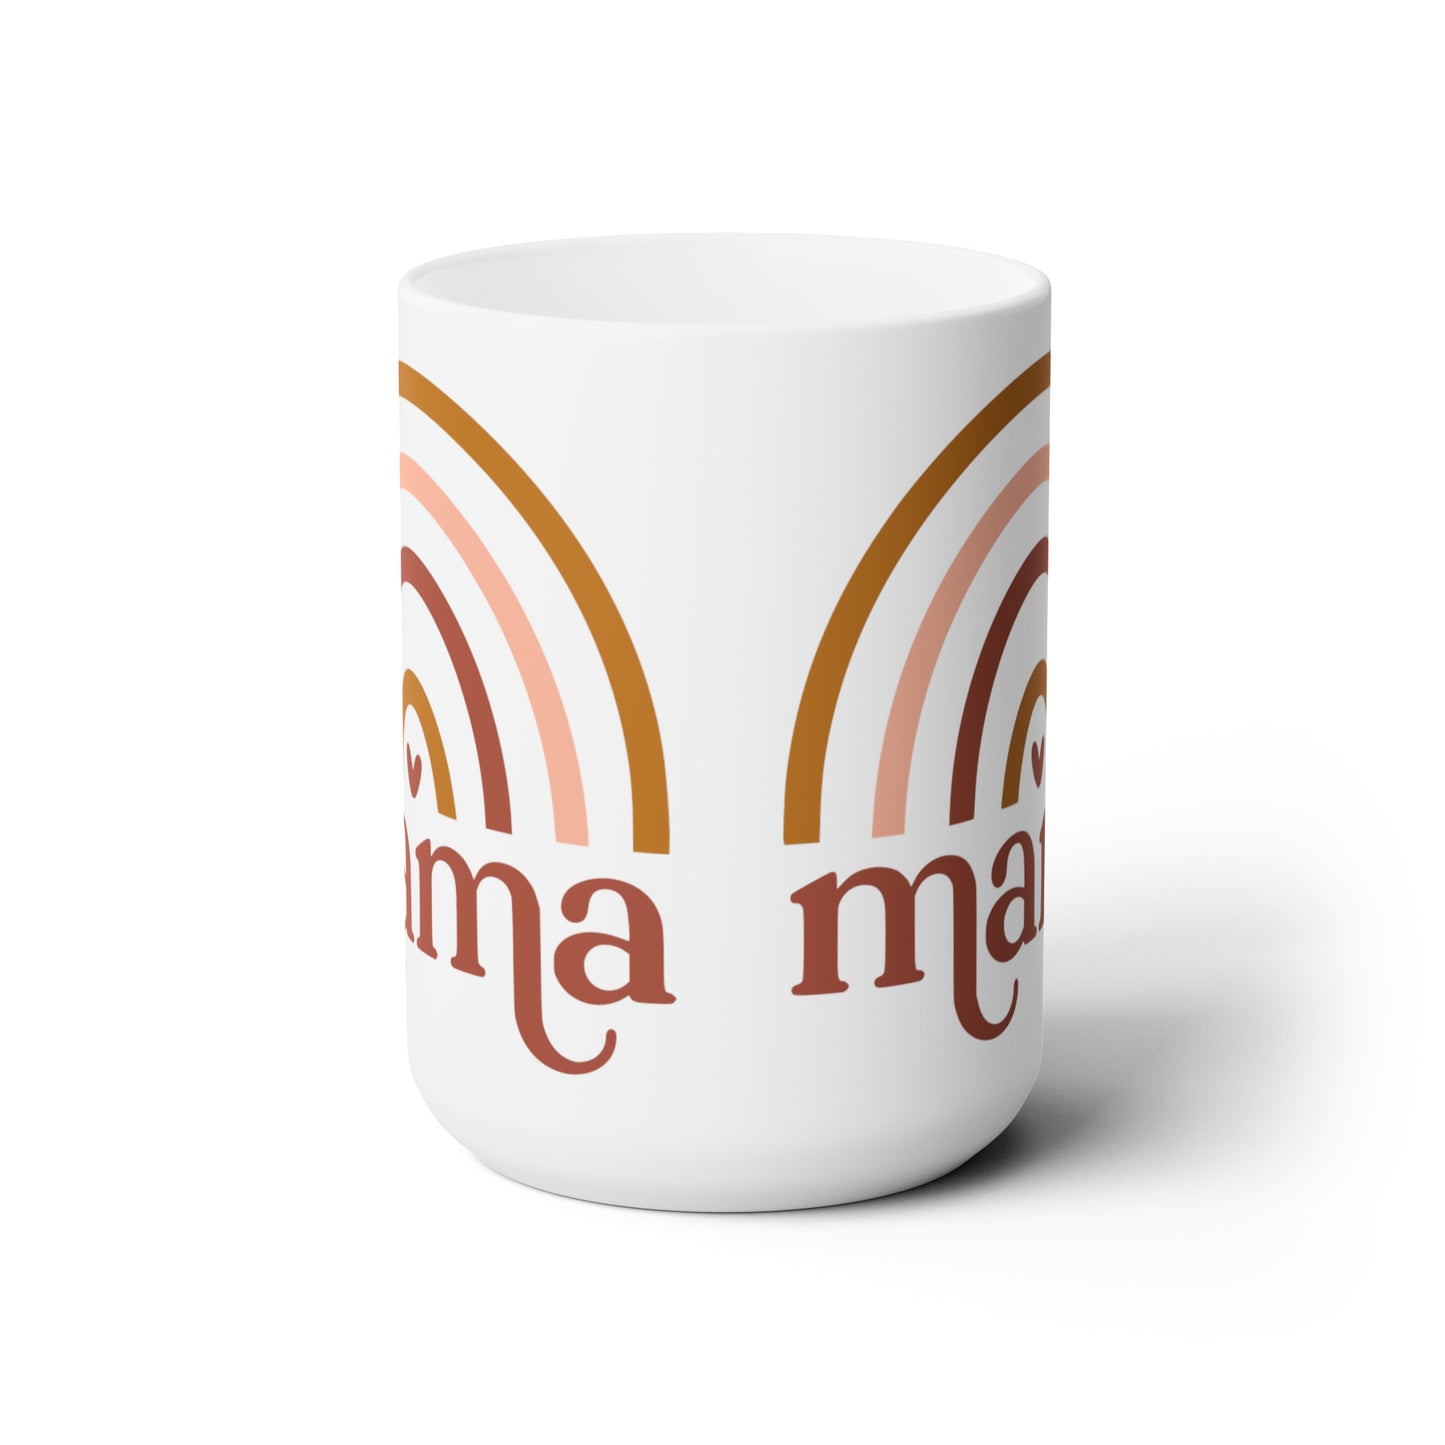 Mama Rainbow Mug 15oz